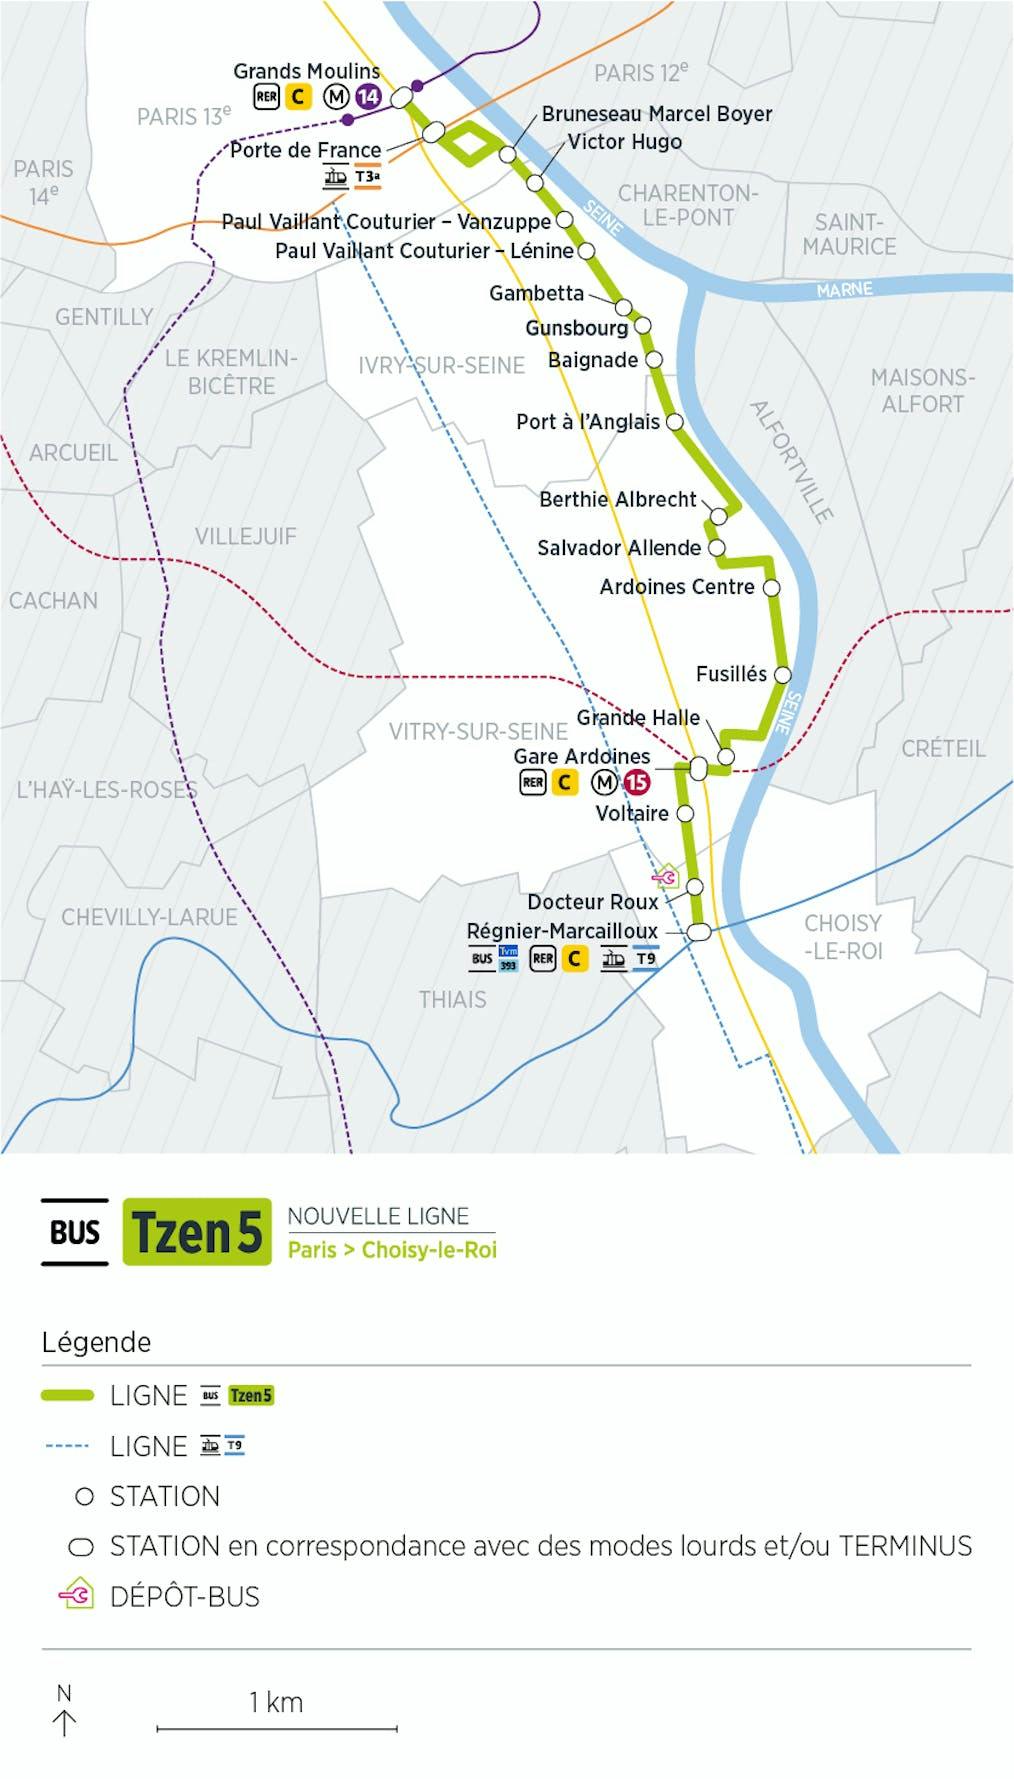 Plan du projet Bus Tzen 5 Nouvelle ligne Paris > Choisy-le-Roi